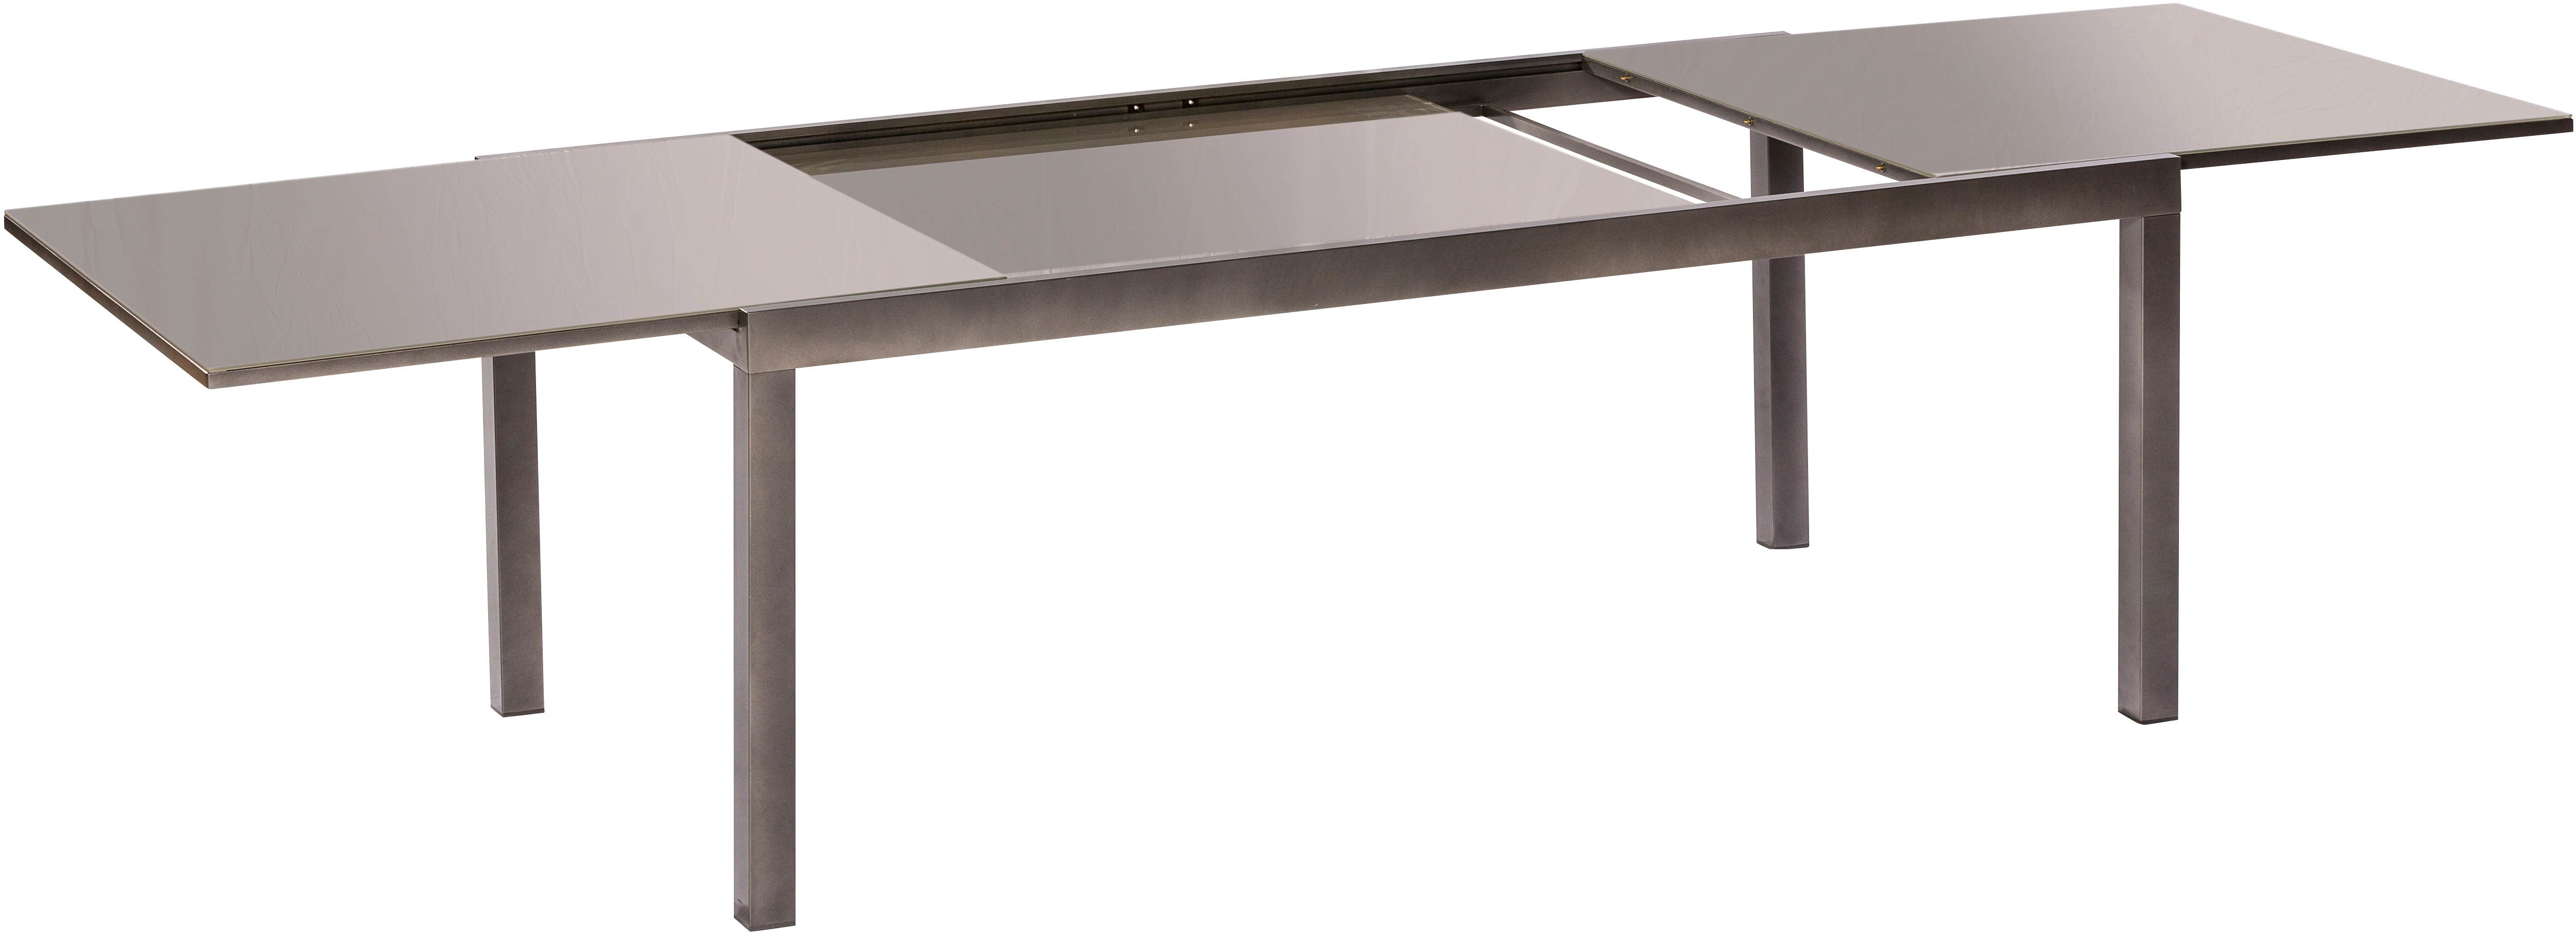 Merxx Gartentisch Semi Rechteckig Aluminium Grau 200/300 cm x 110 cm  Ausziehbar kaufen bei OBI | Tische